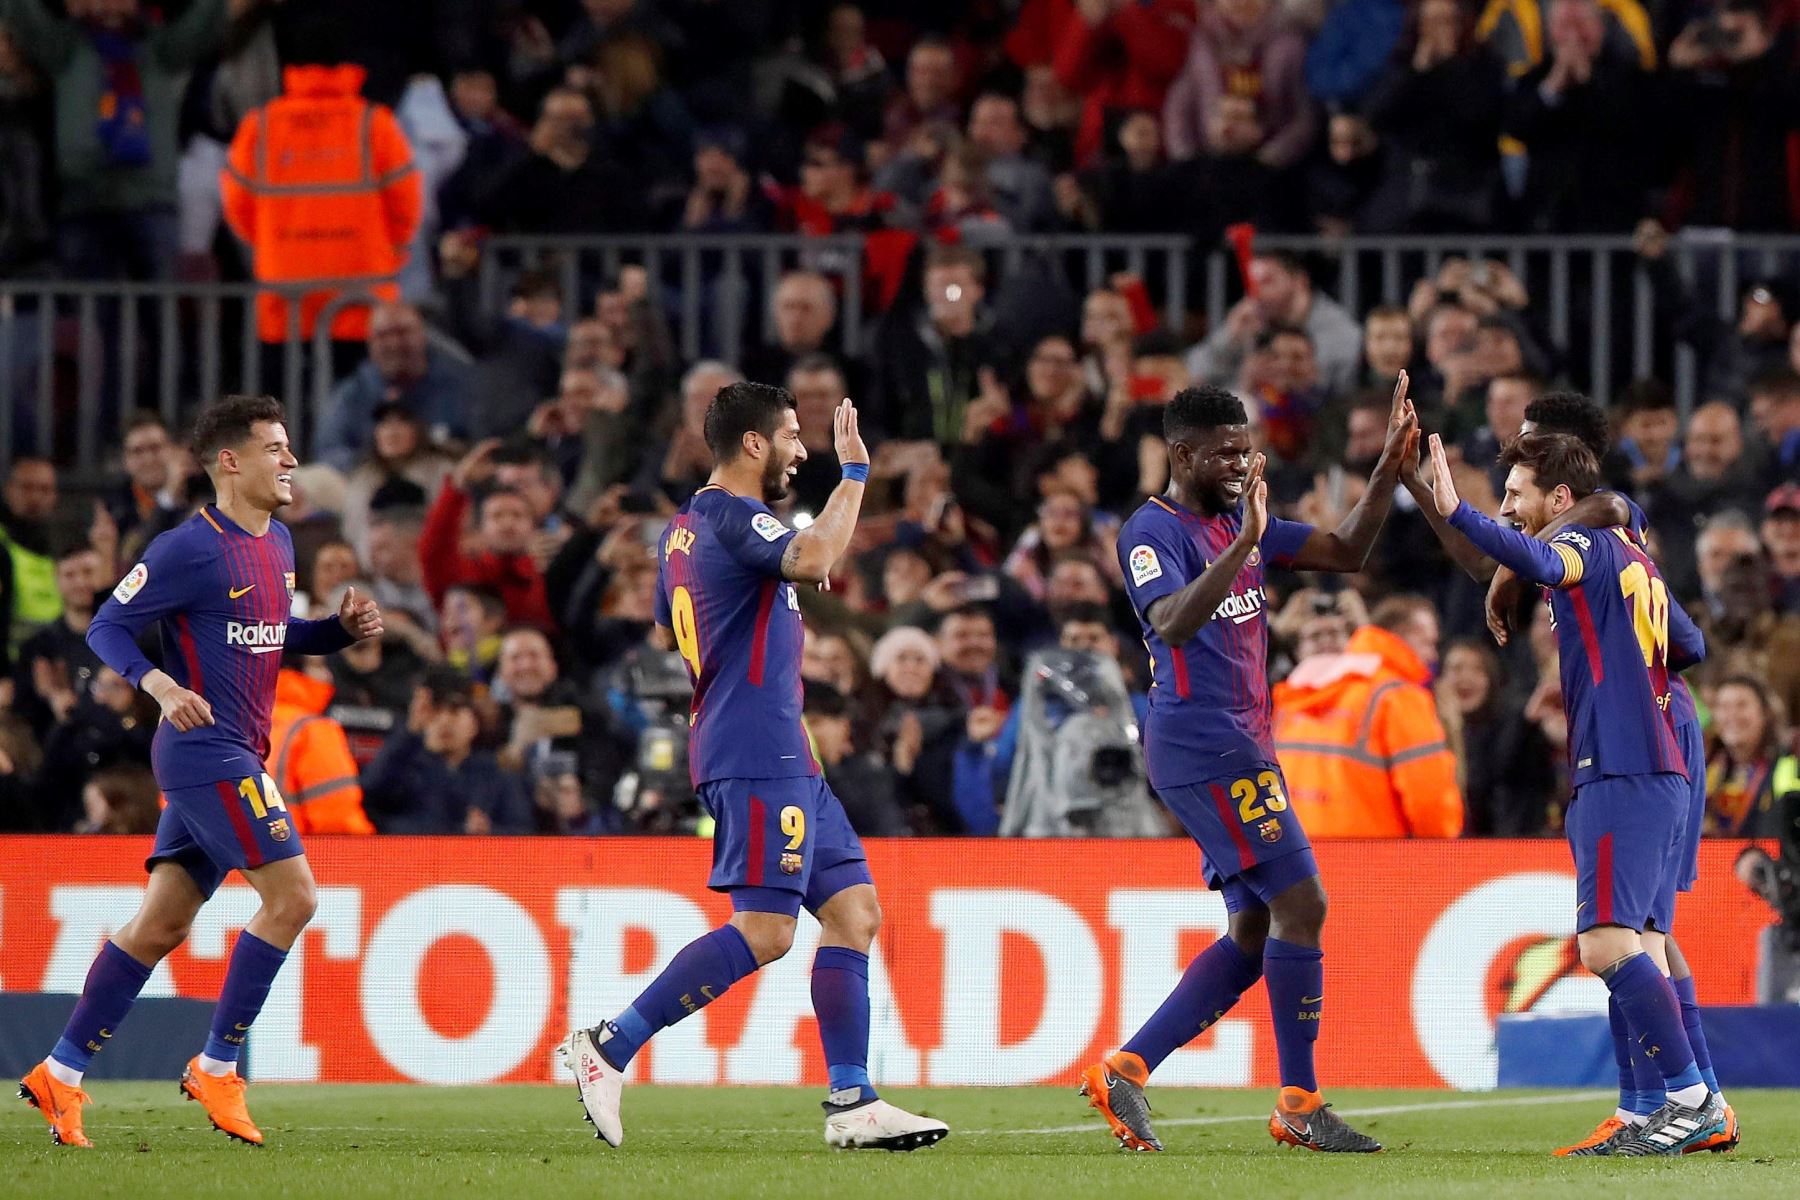 Los jugadores del Barcelona celebran el tercer gol ante el Girona.Foto:EFE